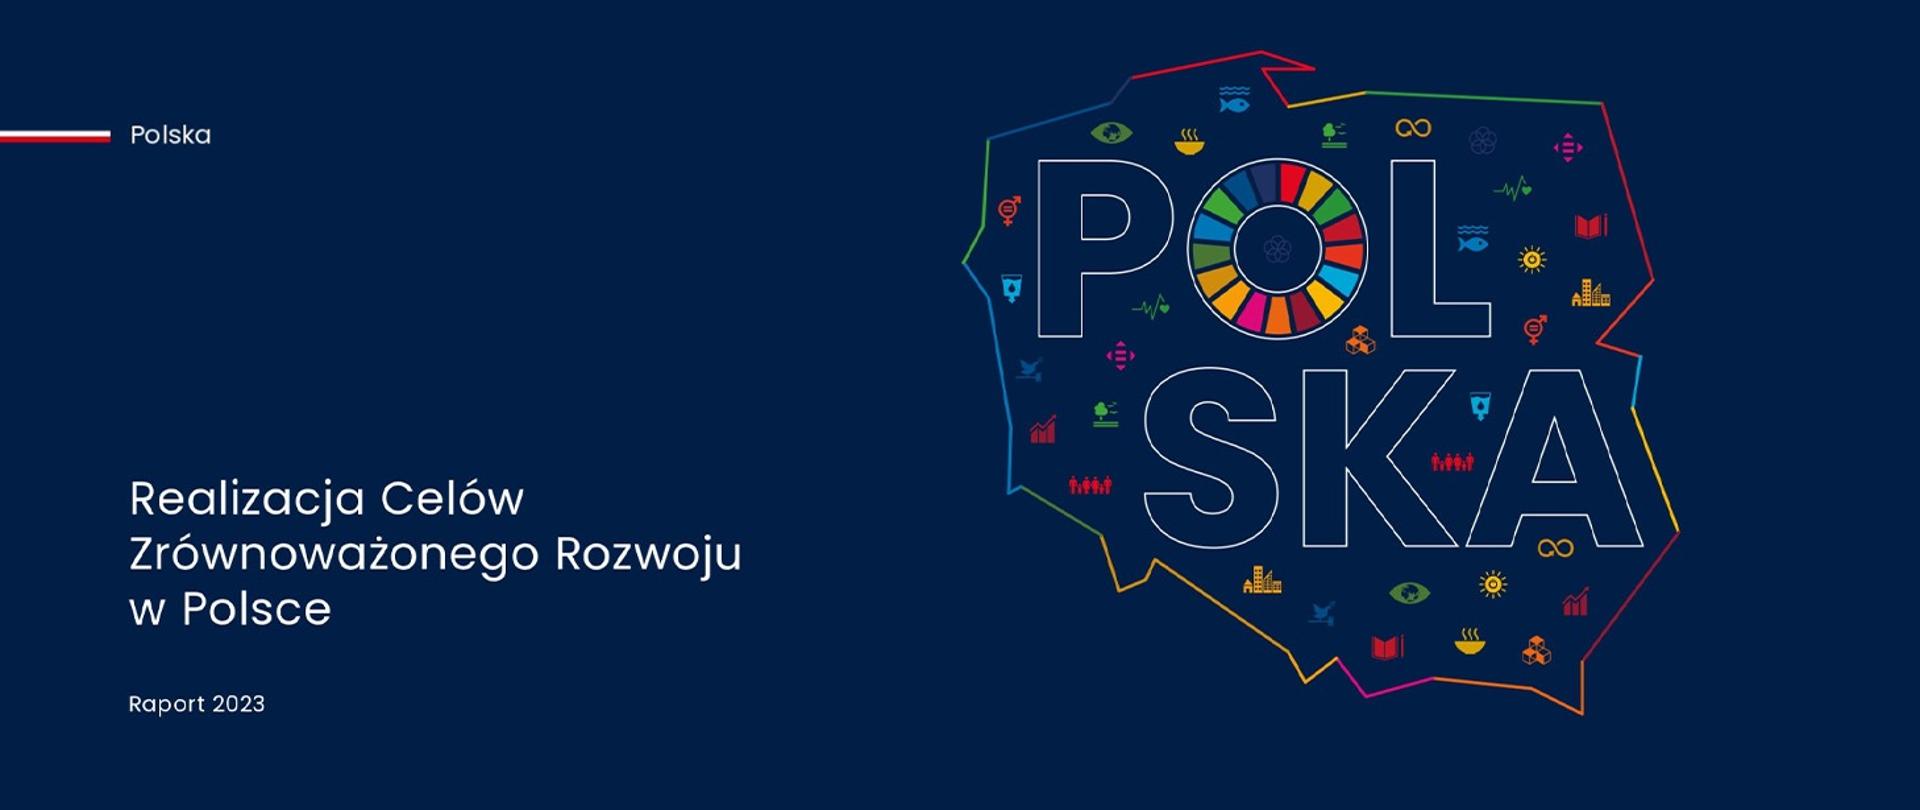 Na grafice zarys mapy Polski na granatowym tle. W środku mapy napis POLSKA. Obok napis: Raport „Realizacja celów zrównoważonego rozwoju w Polsce. Raport 2023”